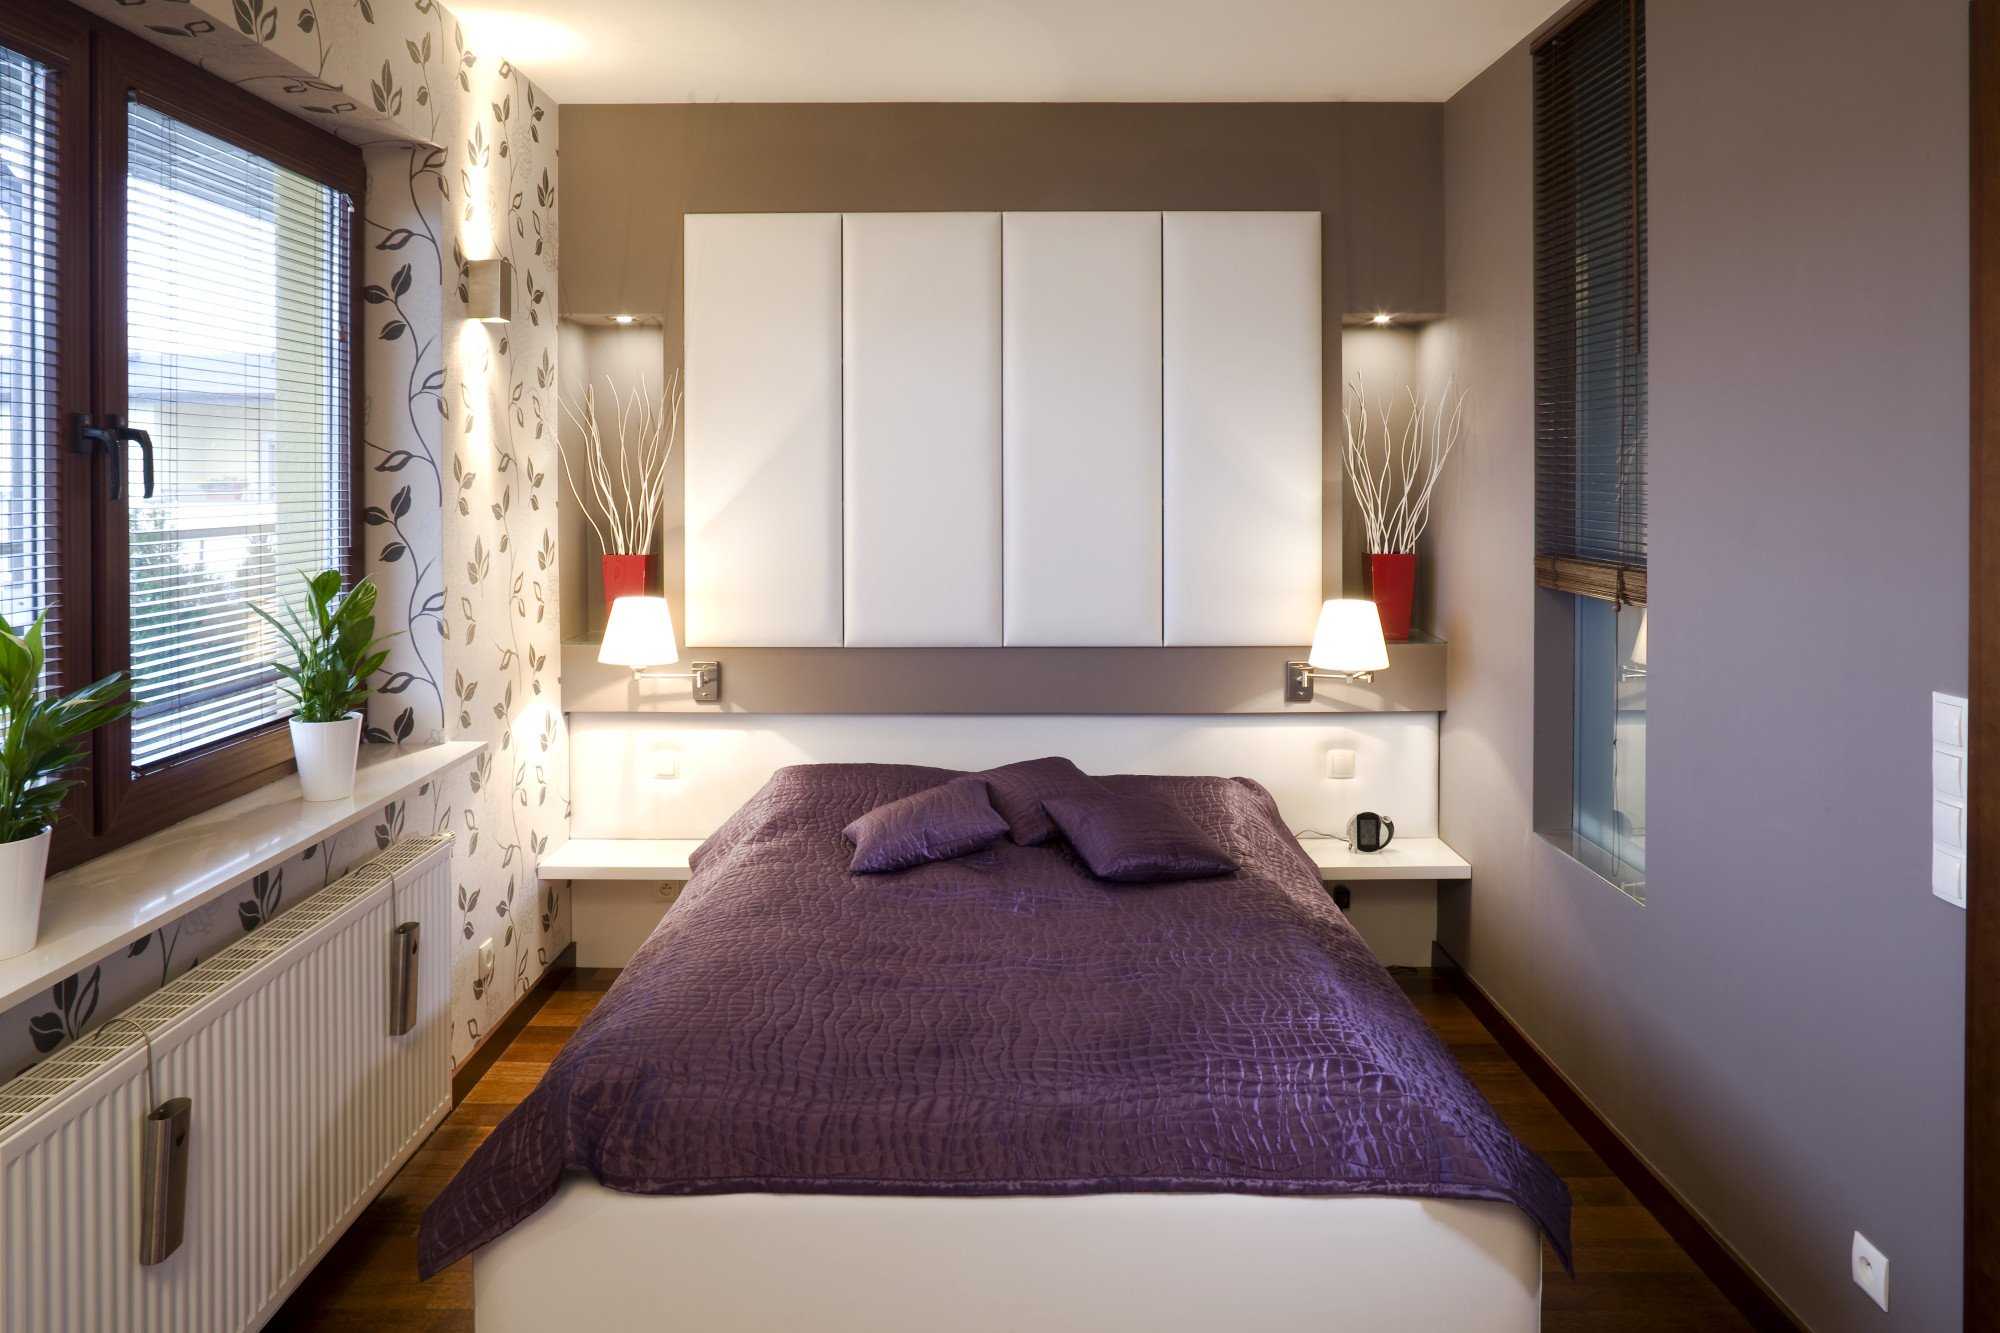 Дизайн узкой спальни  особенности ее оформления Расстановка мебели, кровать у стены, в г образном помещении Цветовая гамма и отделка поверхностей Дизайн маленькой комнаты